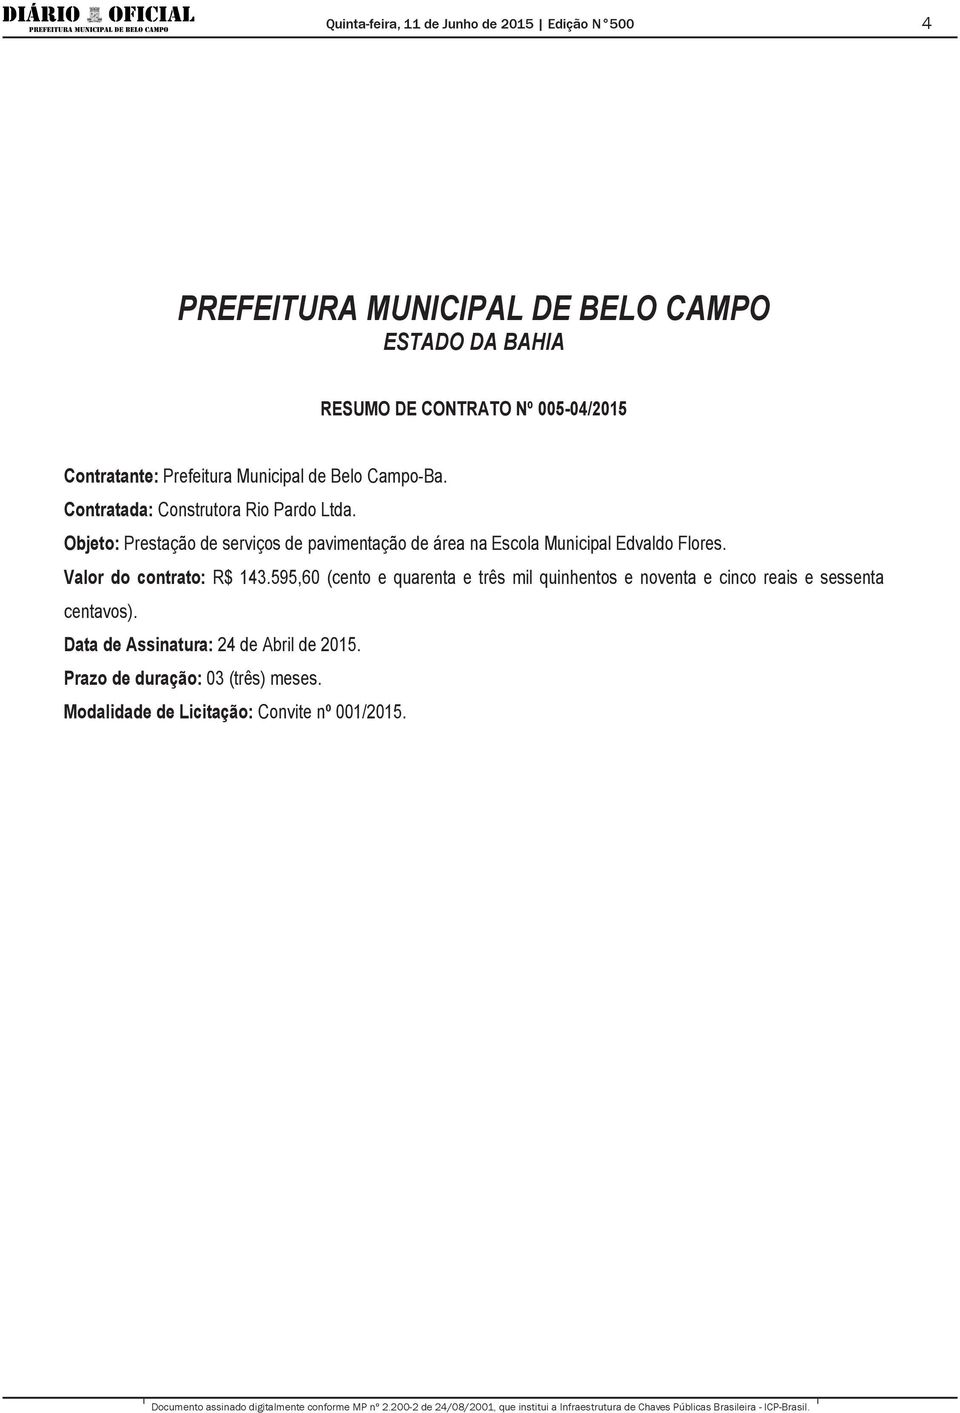 Objeto: Prestação de serviços de pavimentação de área na Escola Municipal Edvaldo Flores.